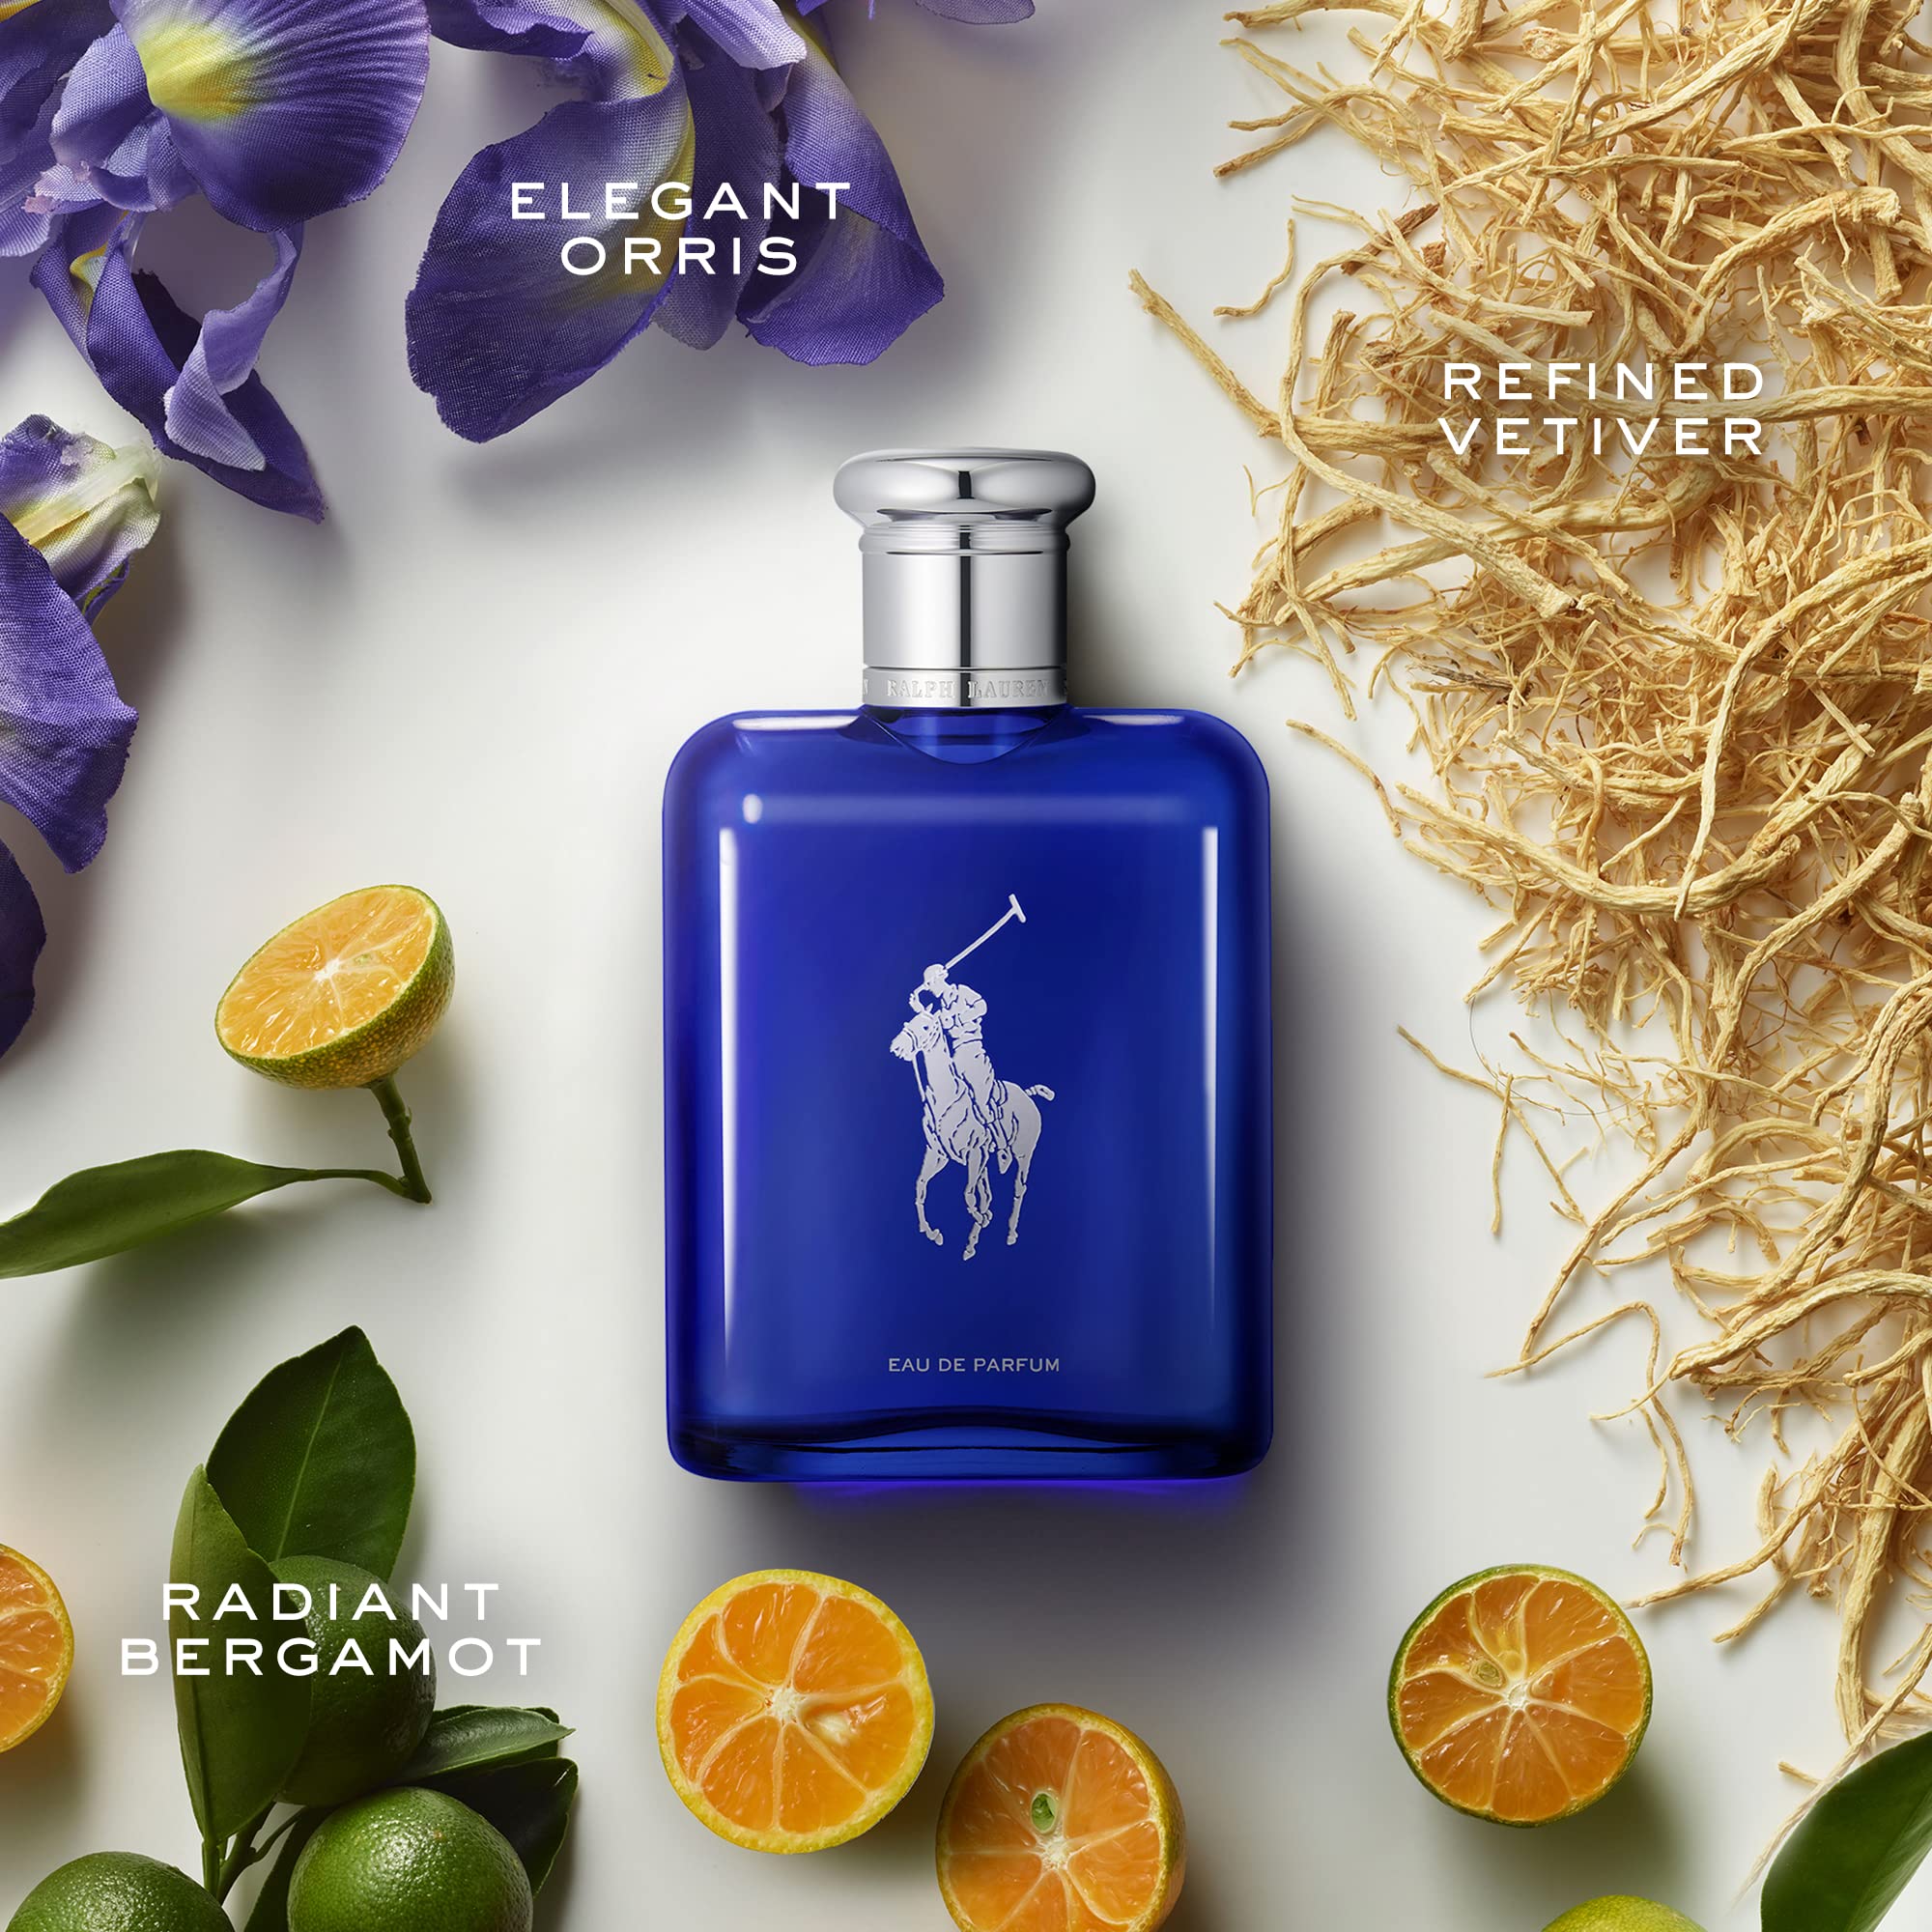 Ralph Lauren - Polo Blue - Eau de Parfum - Men's Cologne - Aquatic & Fresh - With Citrus, Bergamot, and Vetiver - Medium Intensity